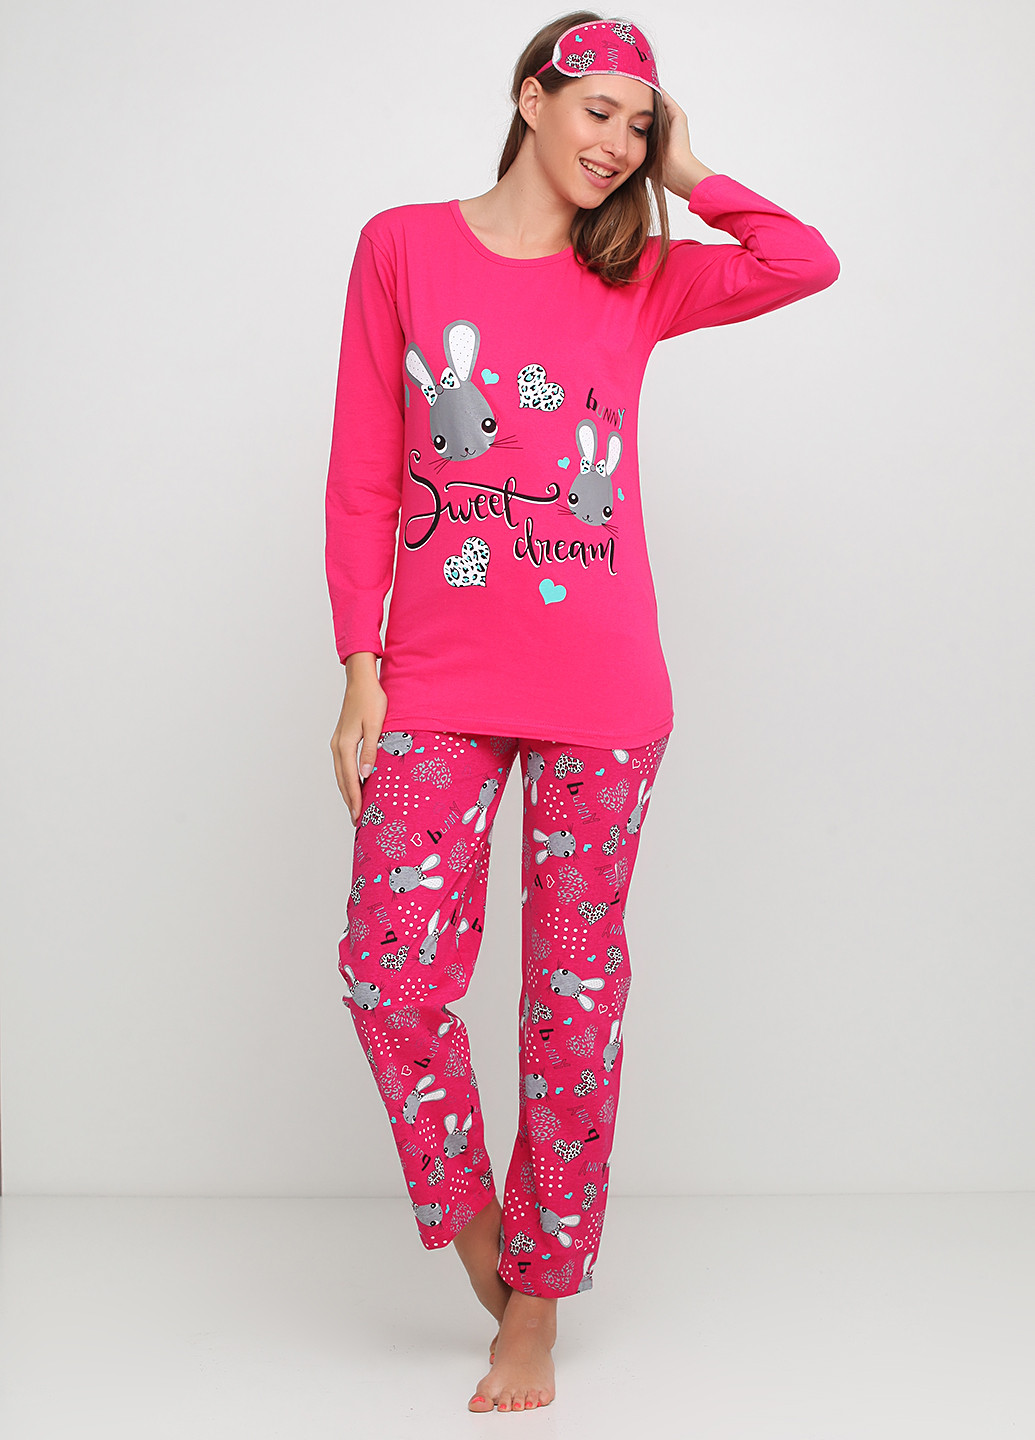 Малиновый демисезонный комплект (лонгслив, брюки, маска для сна) Rinda Pijama